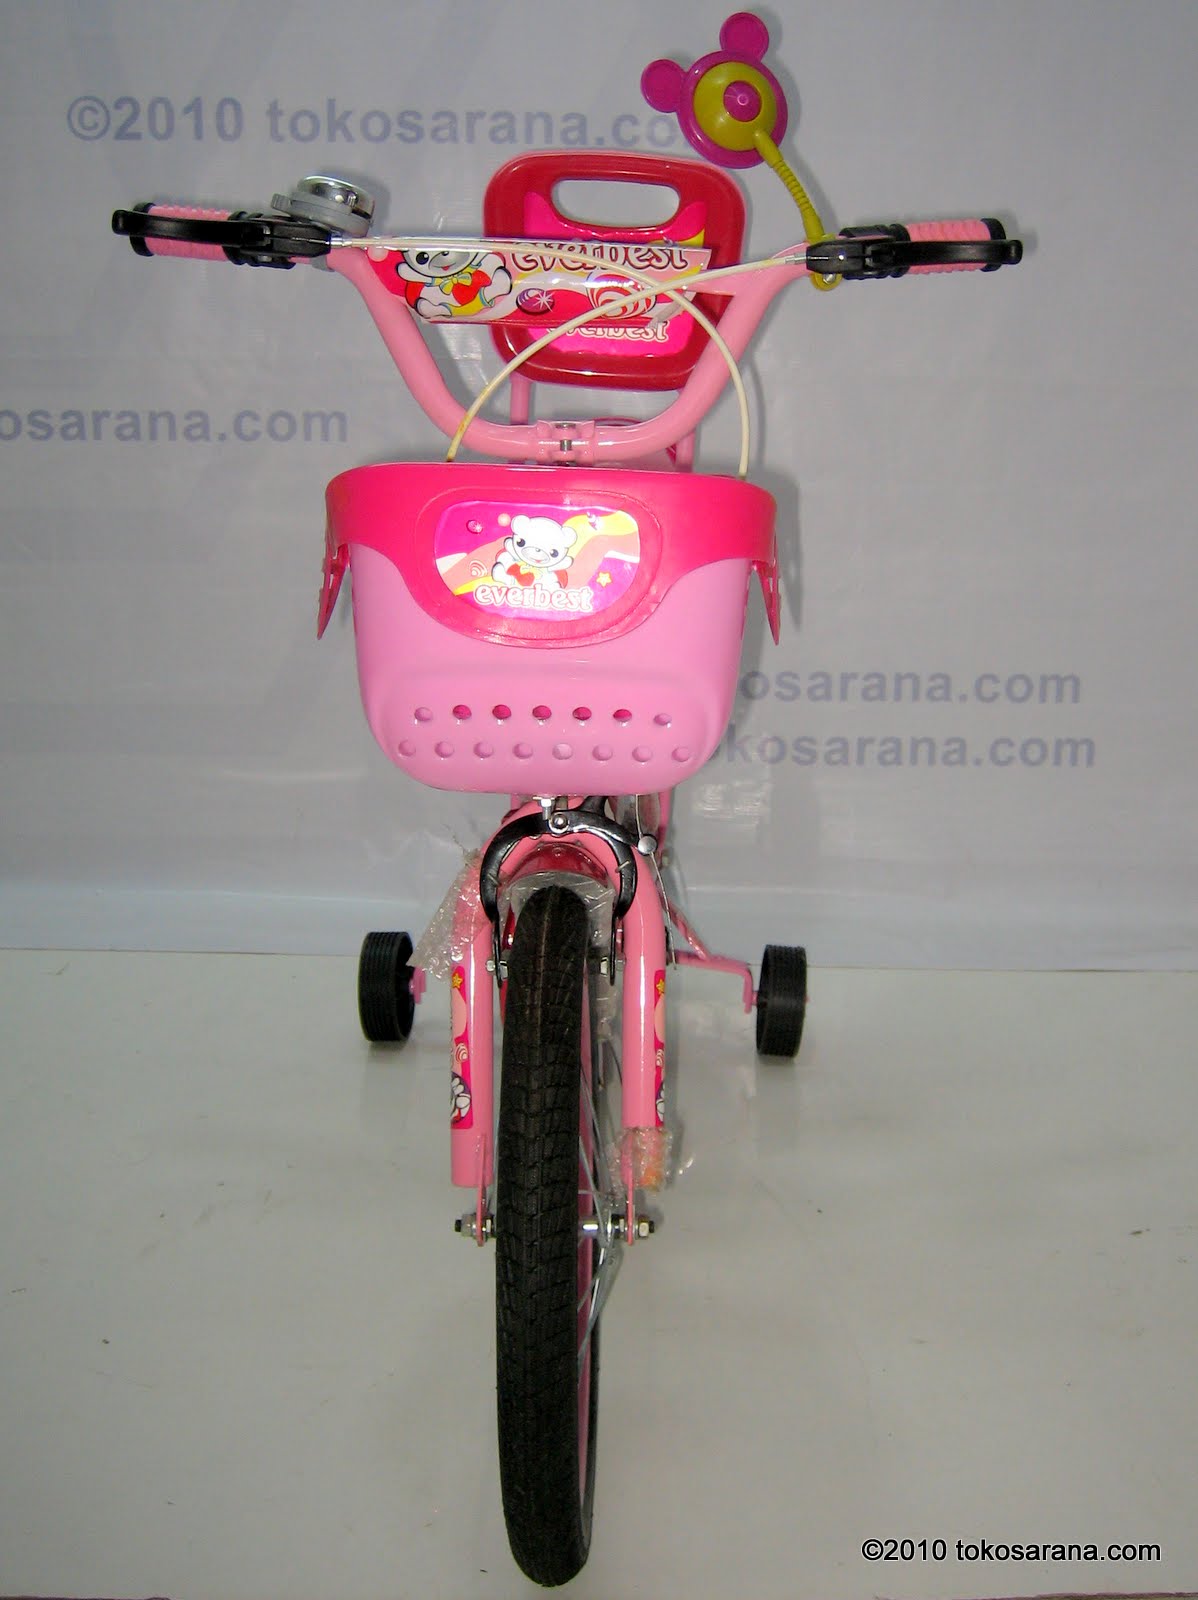 Clearance Sale: Sepeda, Mainan Anak dan Perlengkapan Bayi 